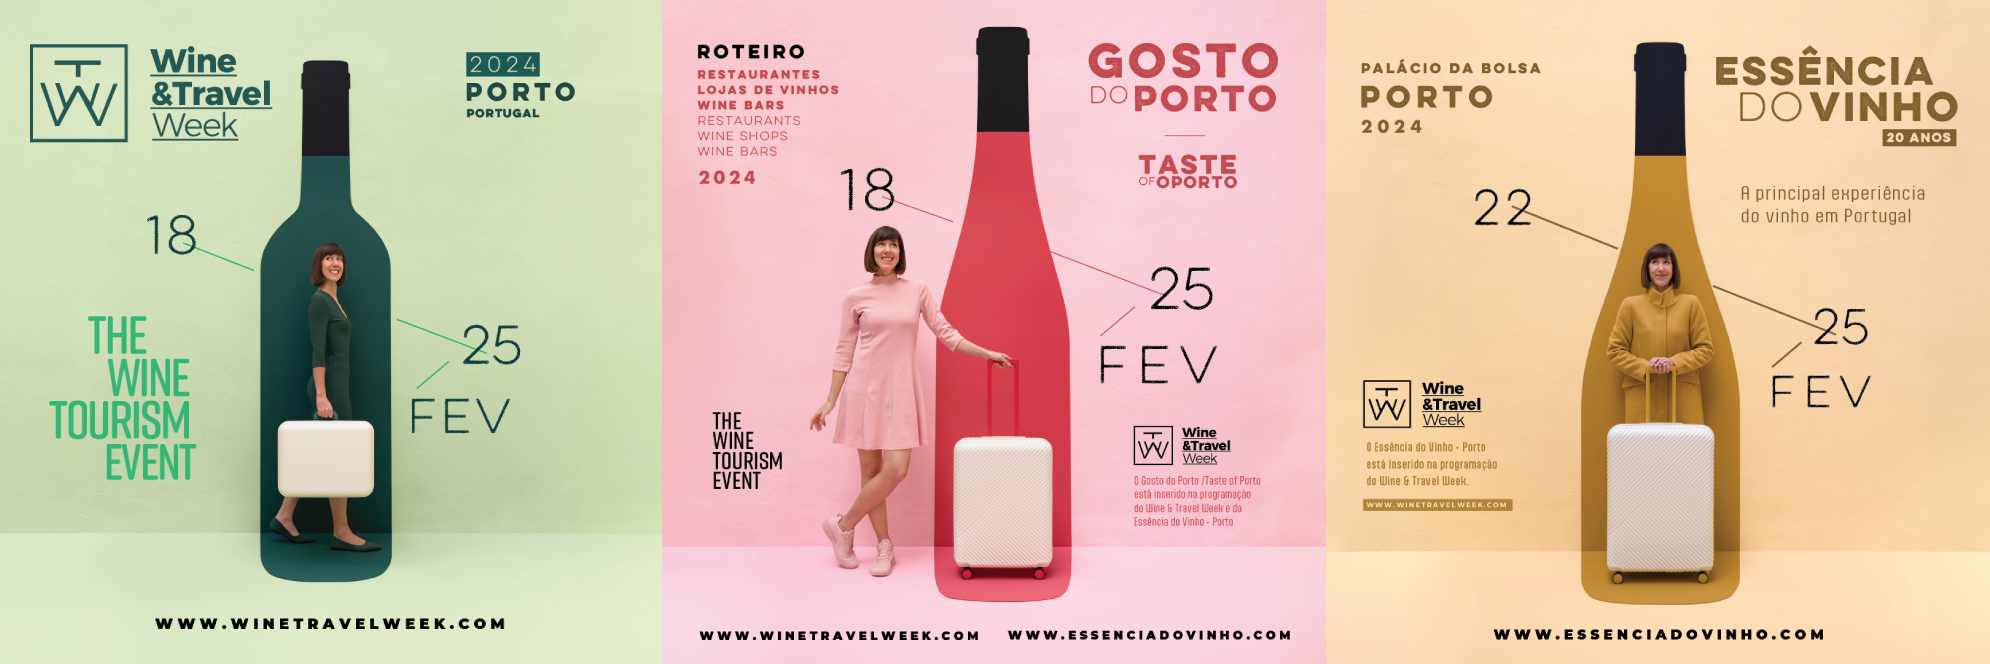 Destinos, Espetáculos e Essência: Wine & Travel Week Transforma o Porto numa Capital do Enoturismo